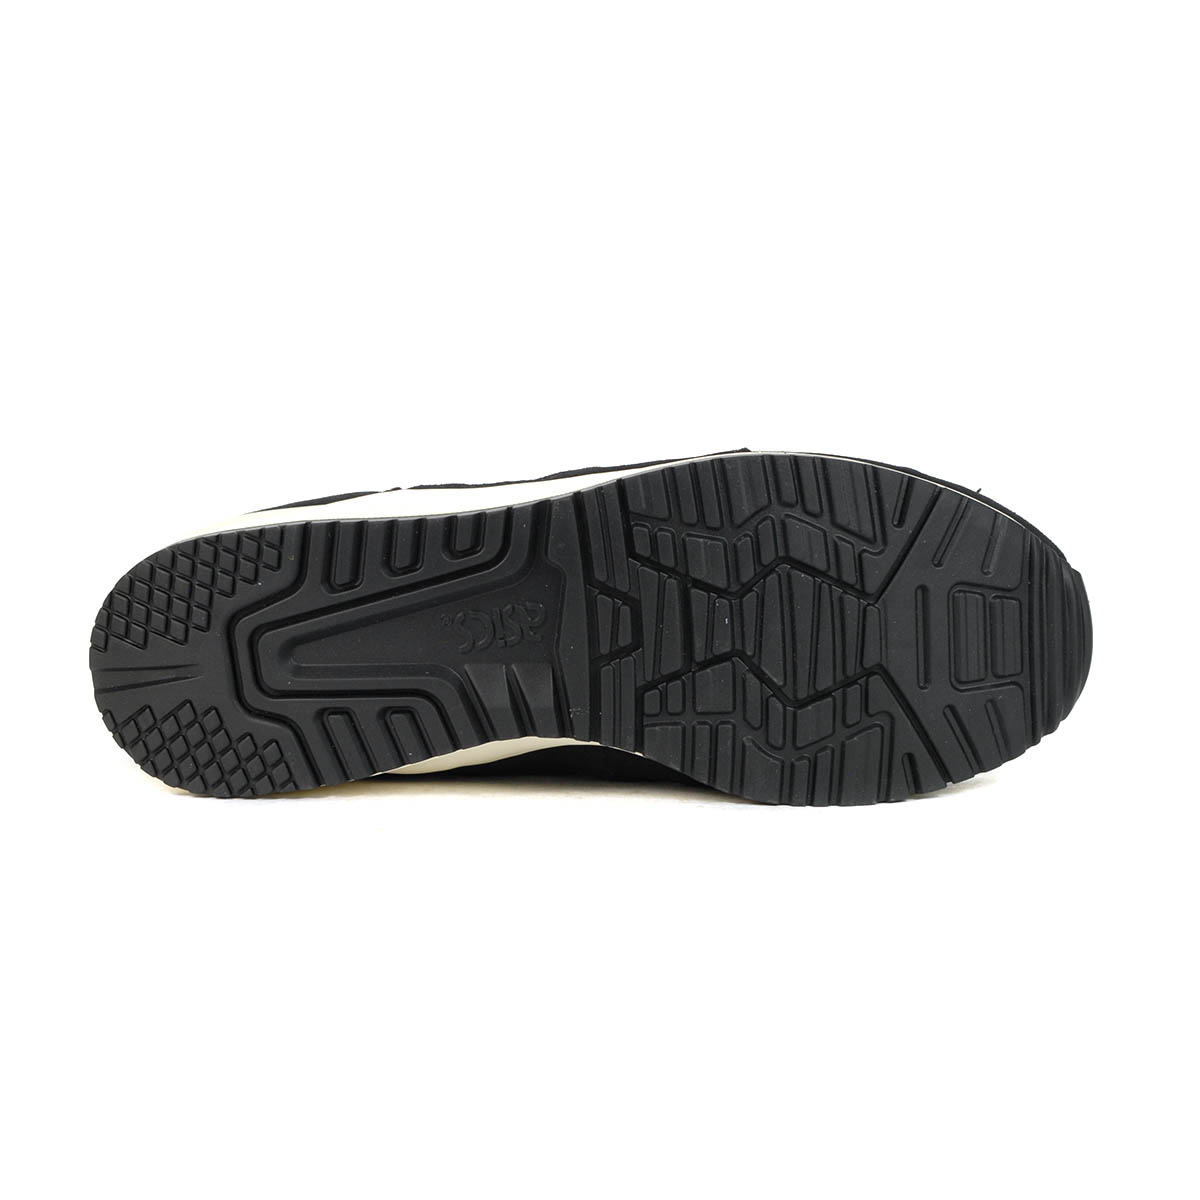 ASICS Men's Gel-Lyte III OG Black/Cream Sneakers  